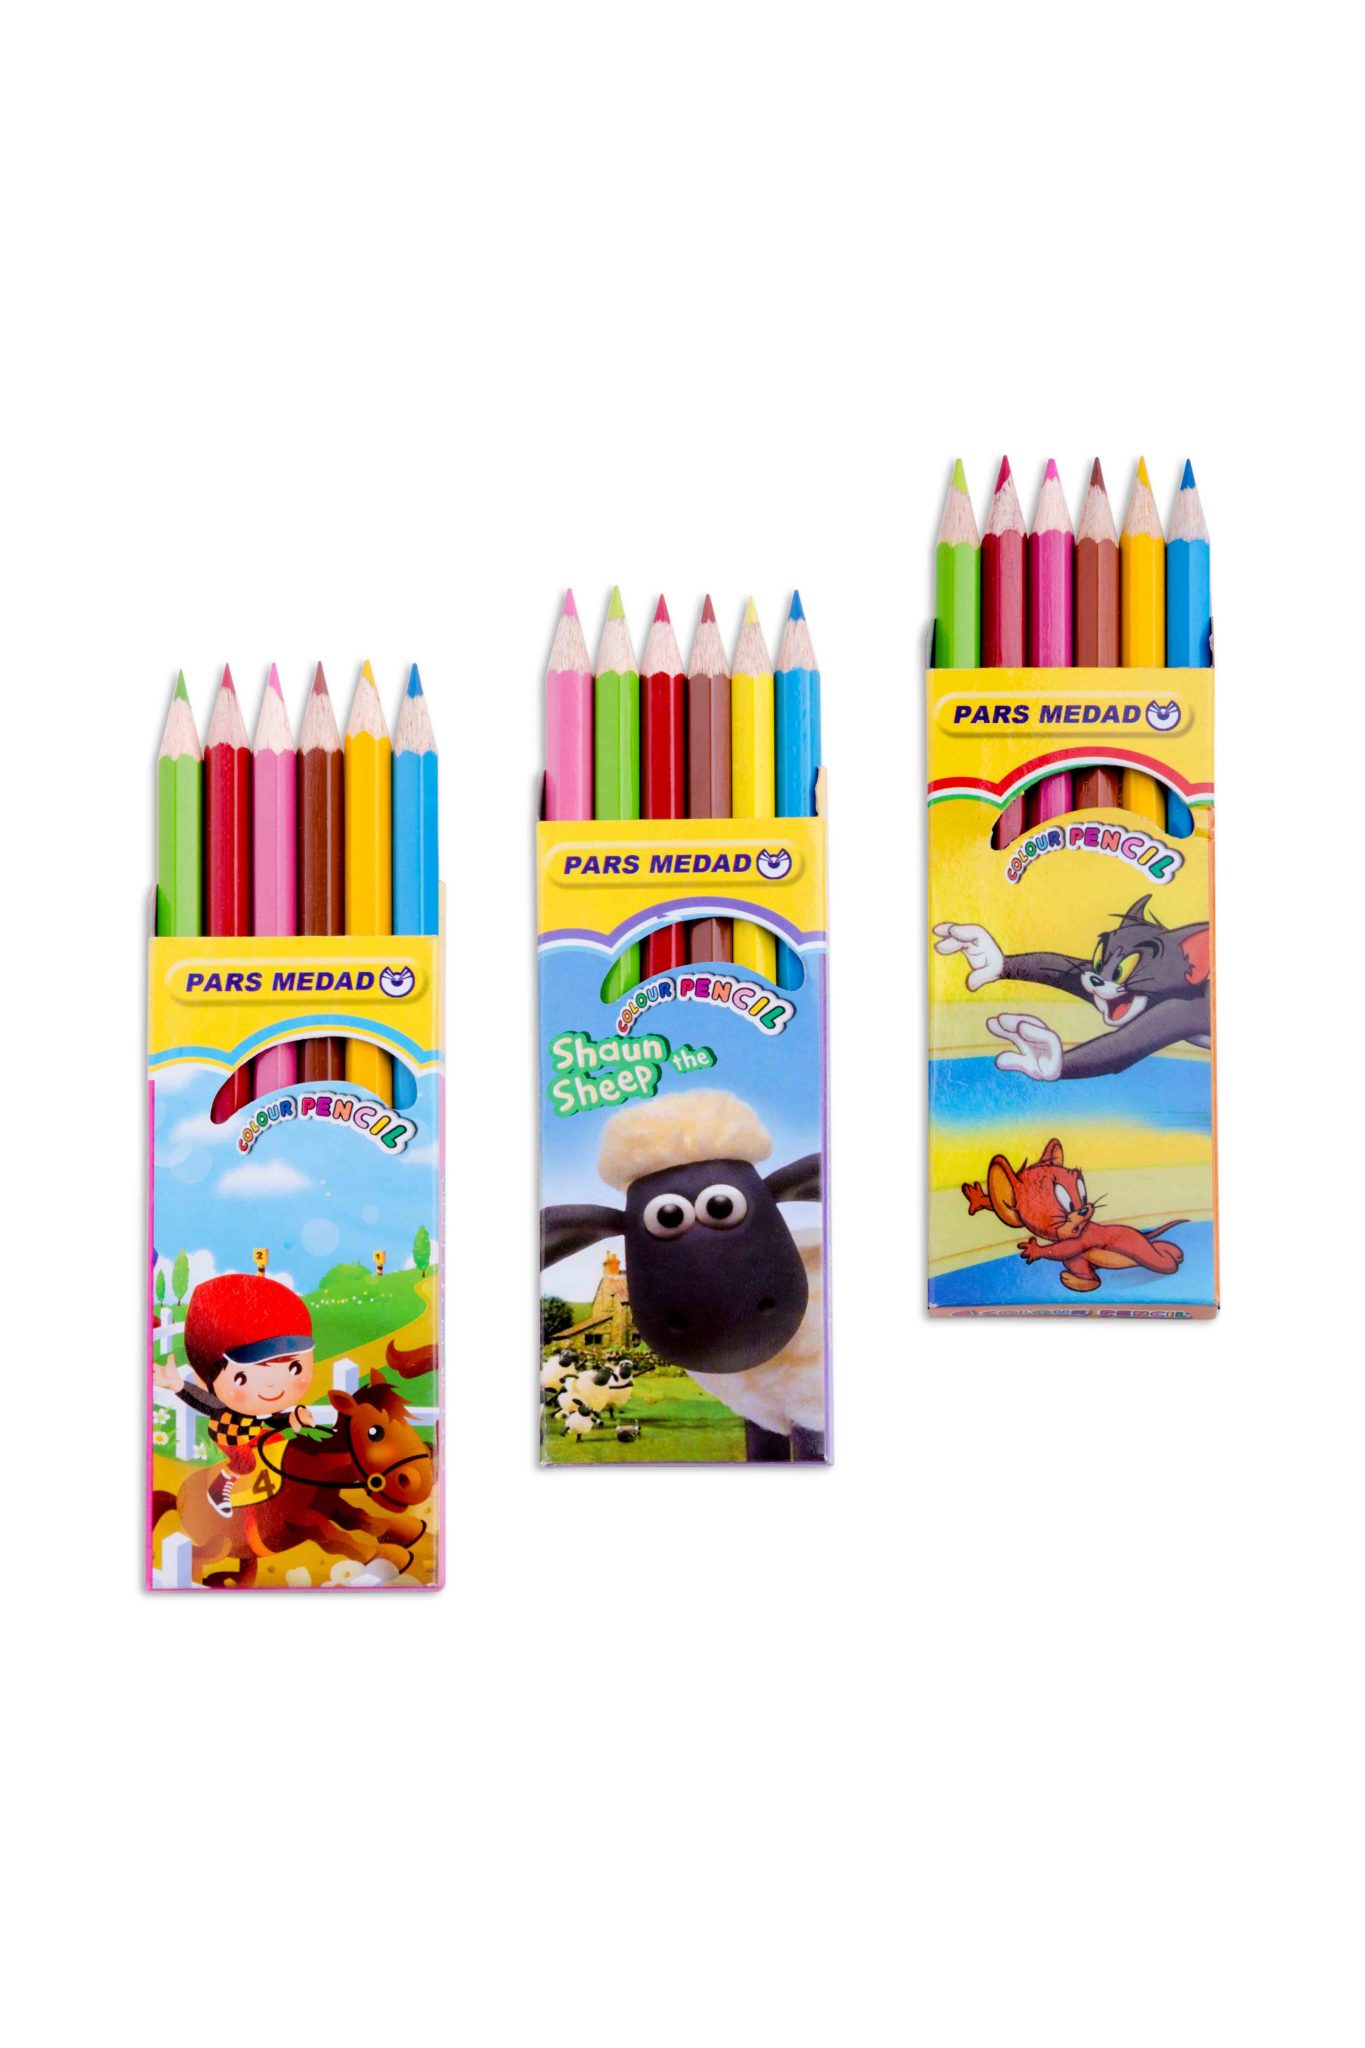 ۶ رنگ جعبه ای پارس مداد